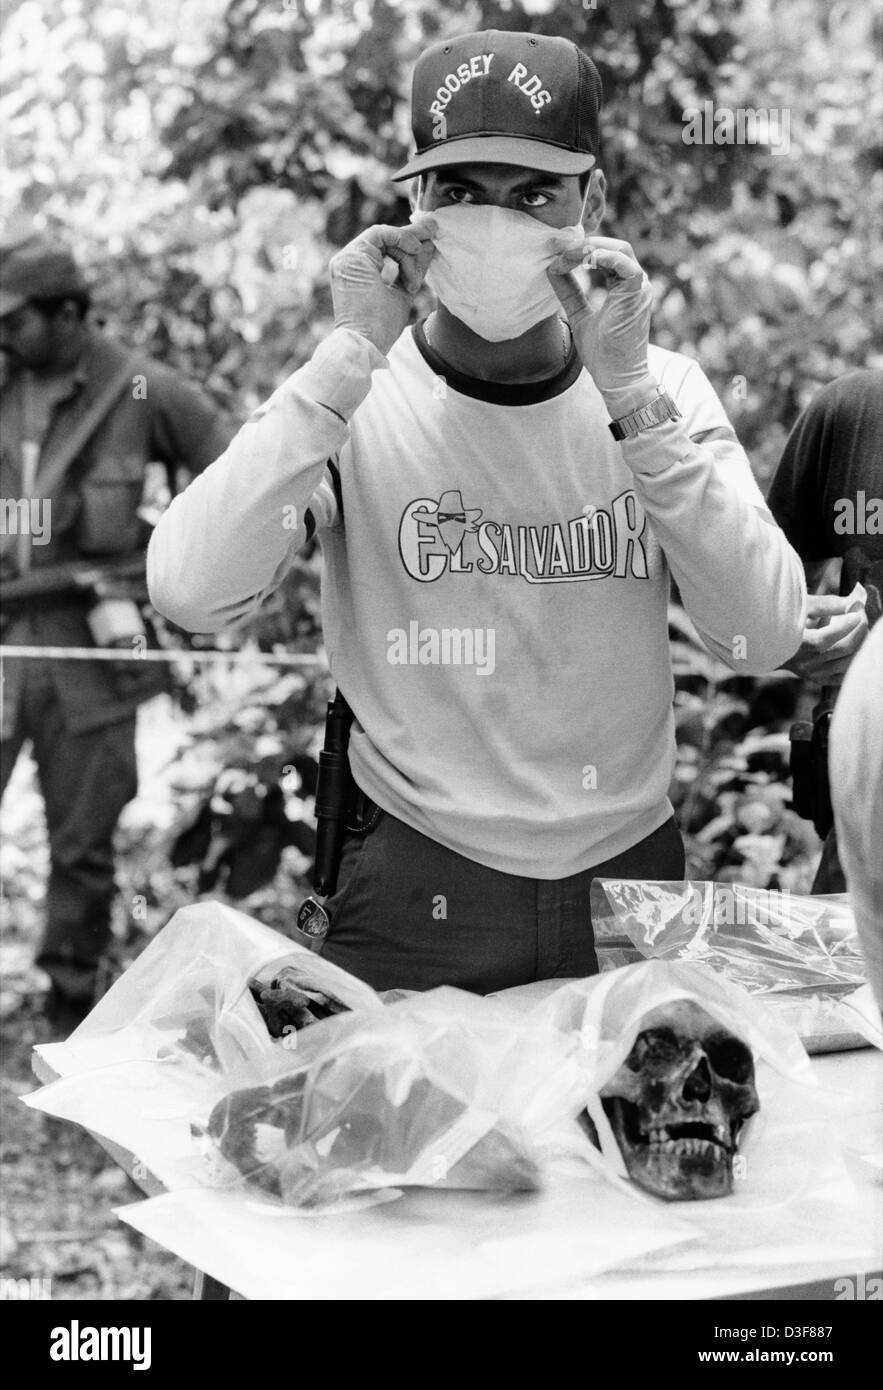 SONSONATE, EL SALVADOR, untersucht eine forensische Team menschliche Überreste. Zwischen 1981 und 1983 verwendet lokale Armee organisiert Zivilschutz Brunnen Los Mangos Farm, um 41 Menschen zu töten. Stockfoto